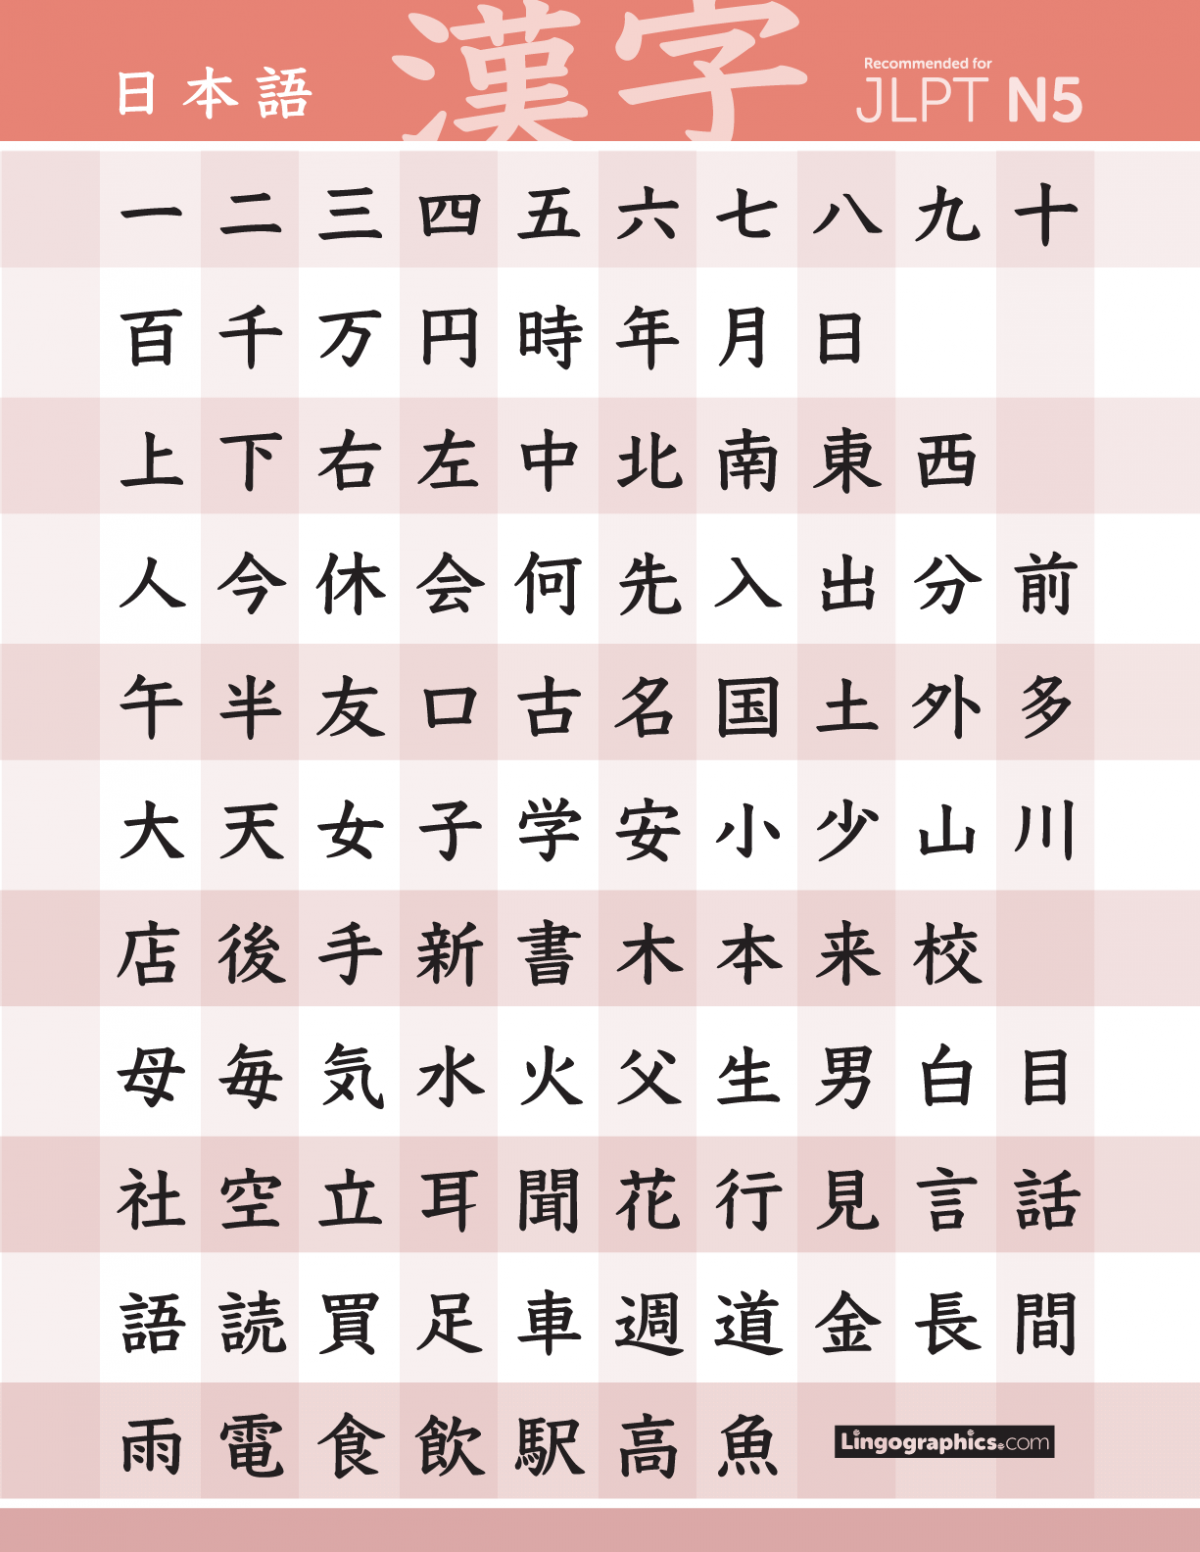 kanji list pdf